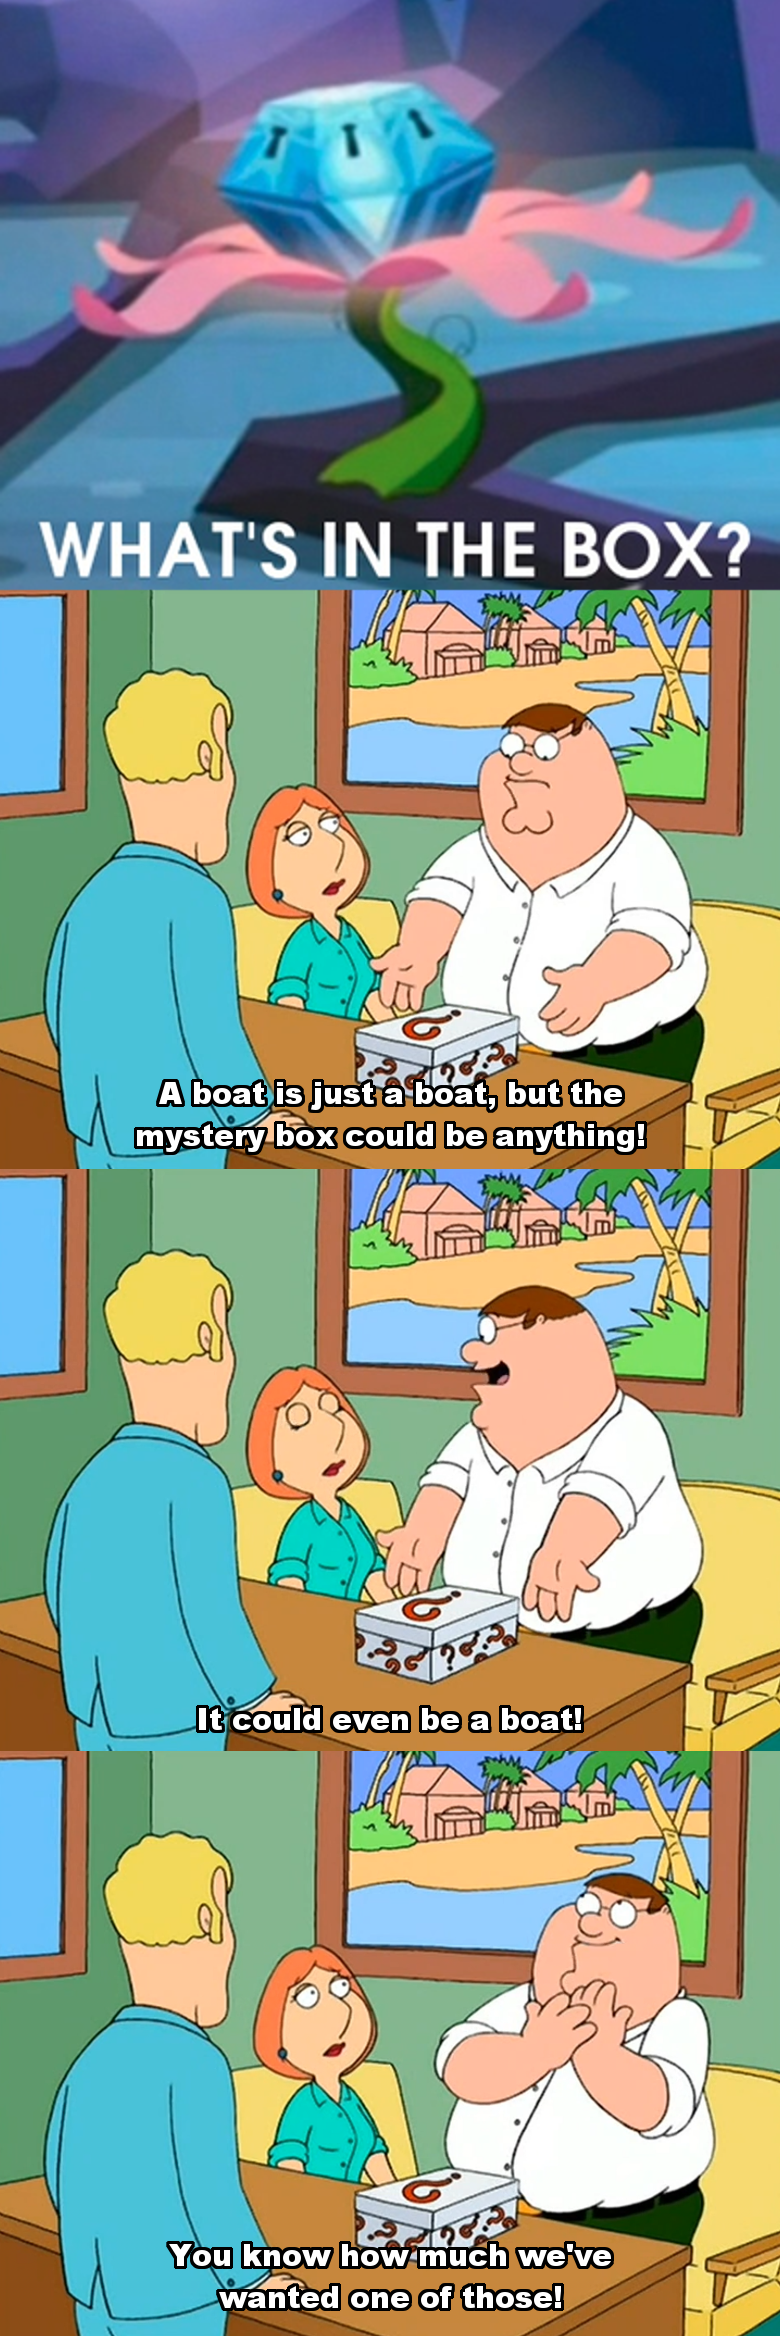 Family Guy Mystery Box Meme - Meme Walls